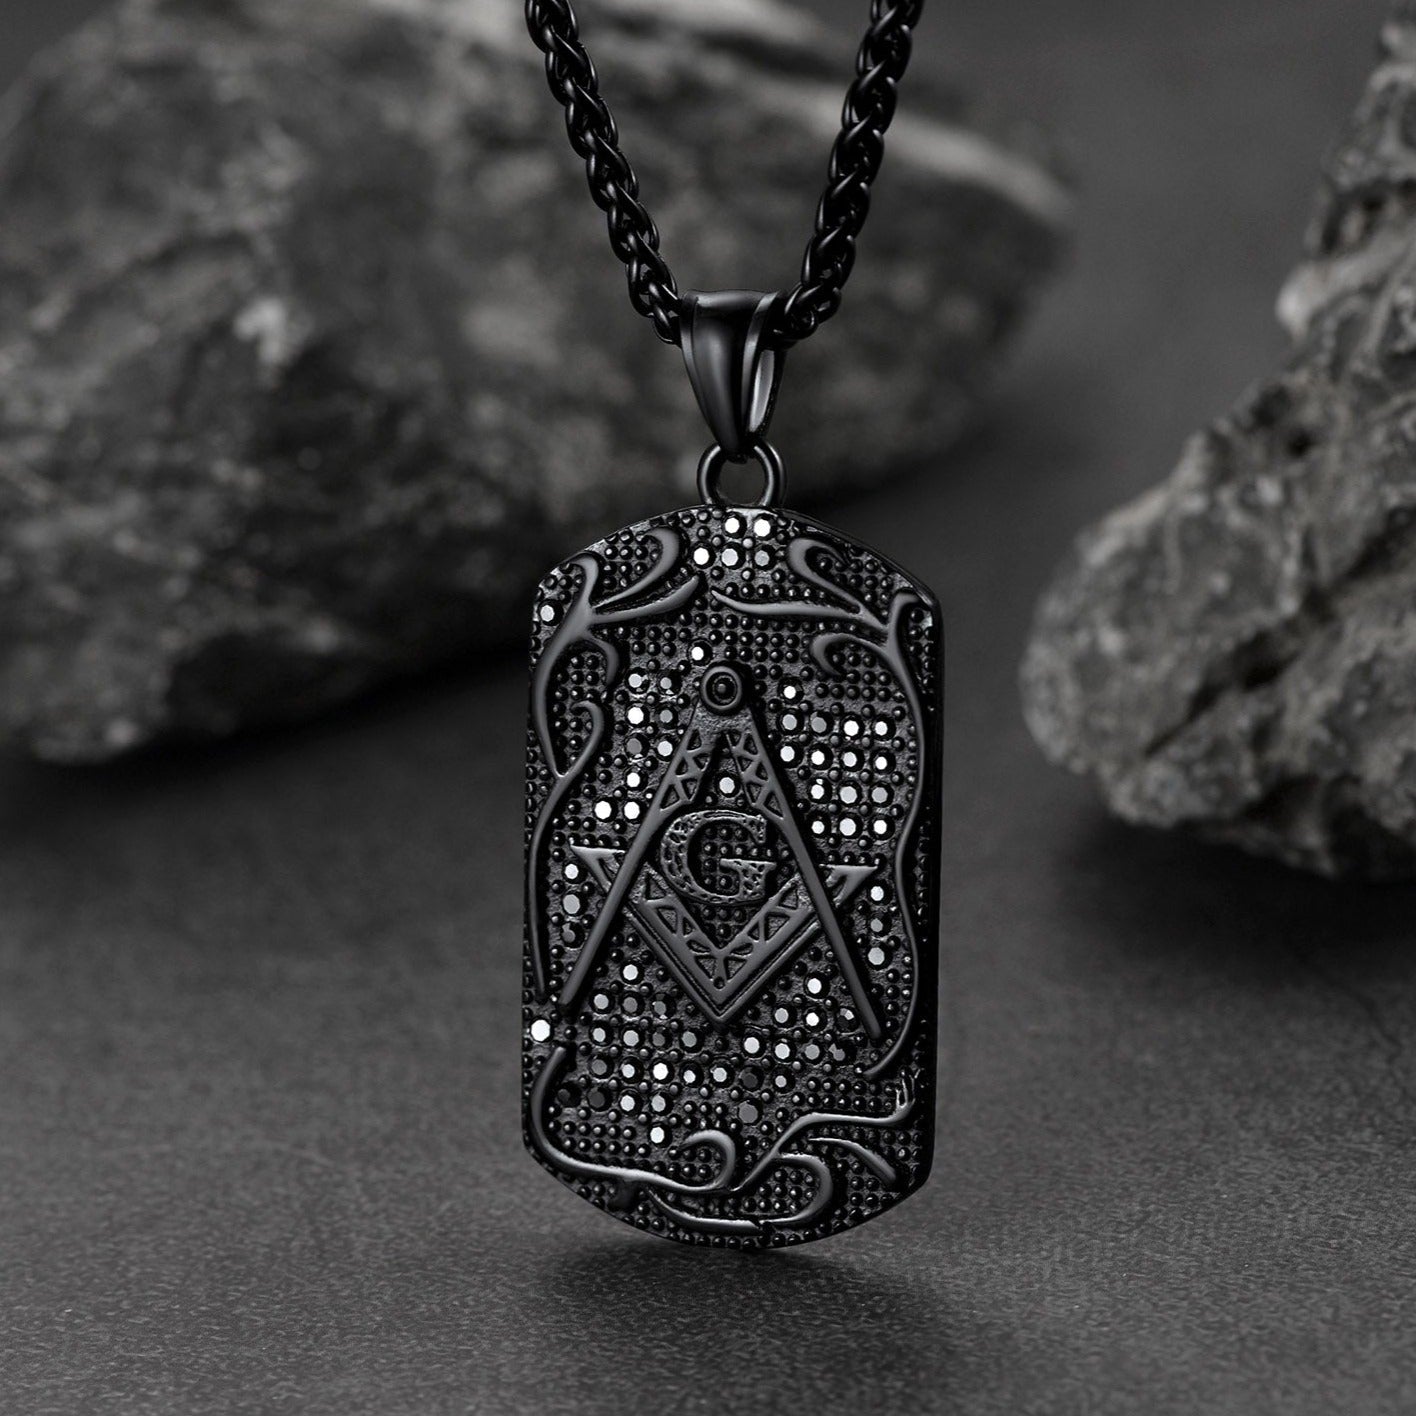 FaithHeart Freemason Pendant Necklace Stainless Steel Masonic Jewelry FaithHeart